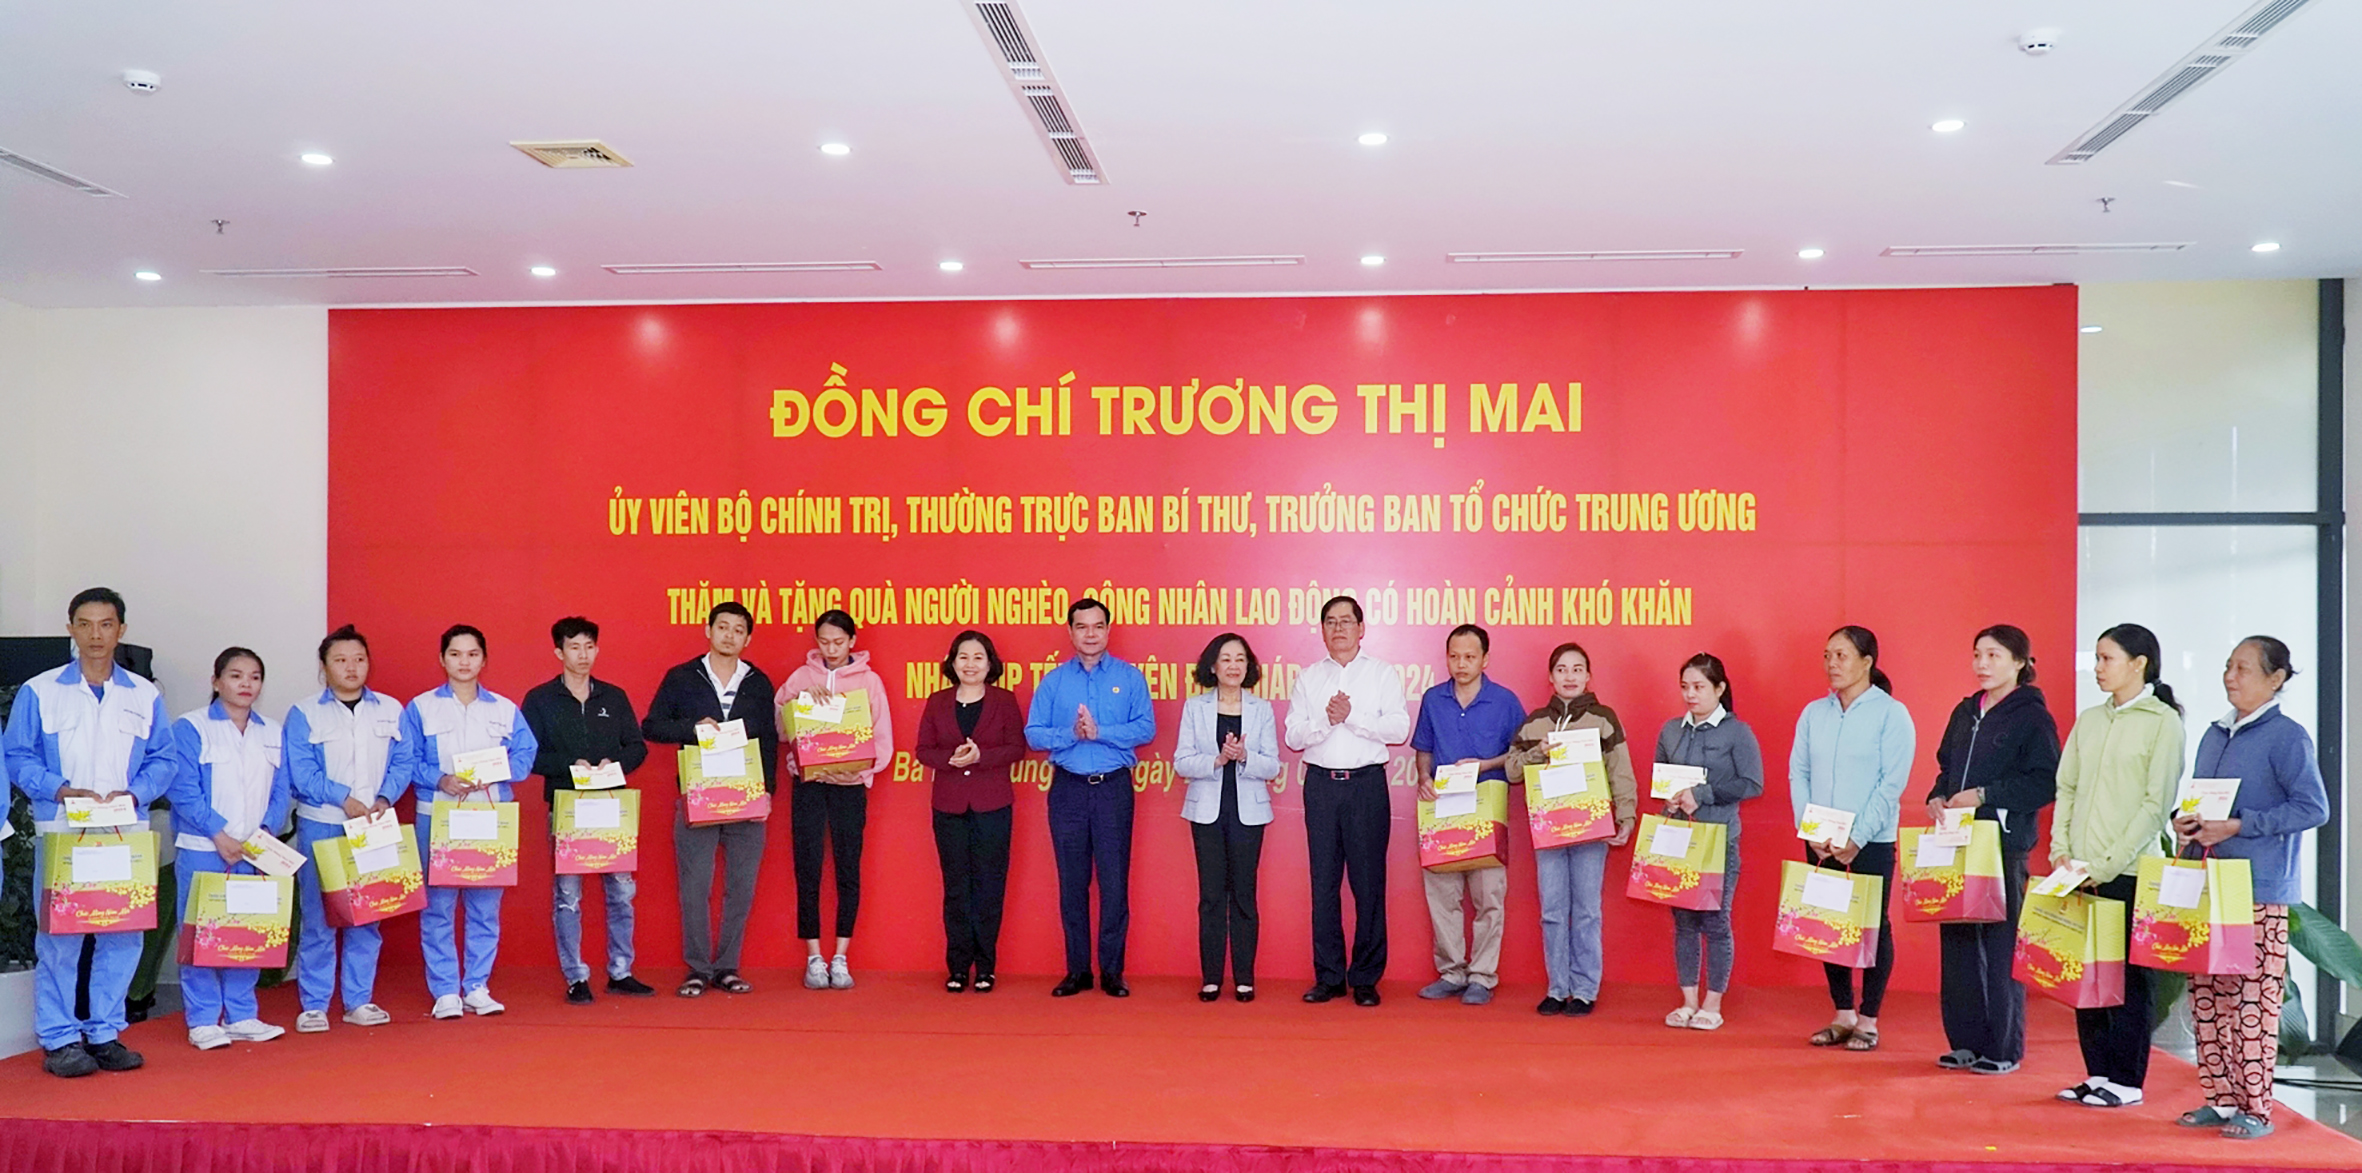 Ủy viên Bộ Chính trị, Thường trực Ban Bí thư Trương Thị Mai, thăm, tặng quà Tết công nhân Bà Rịa - Vũng Tàu